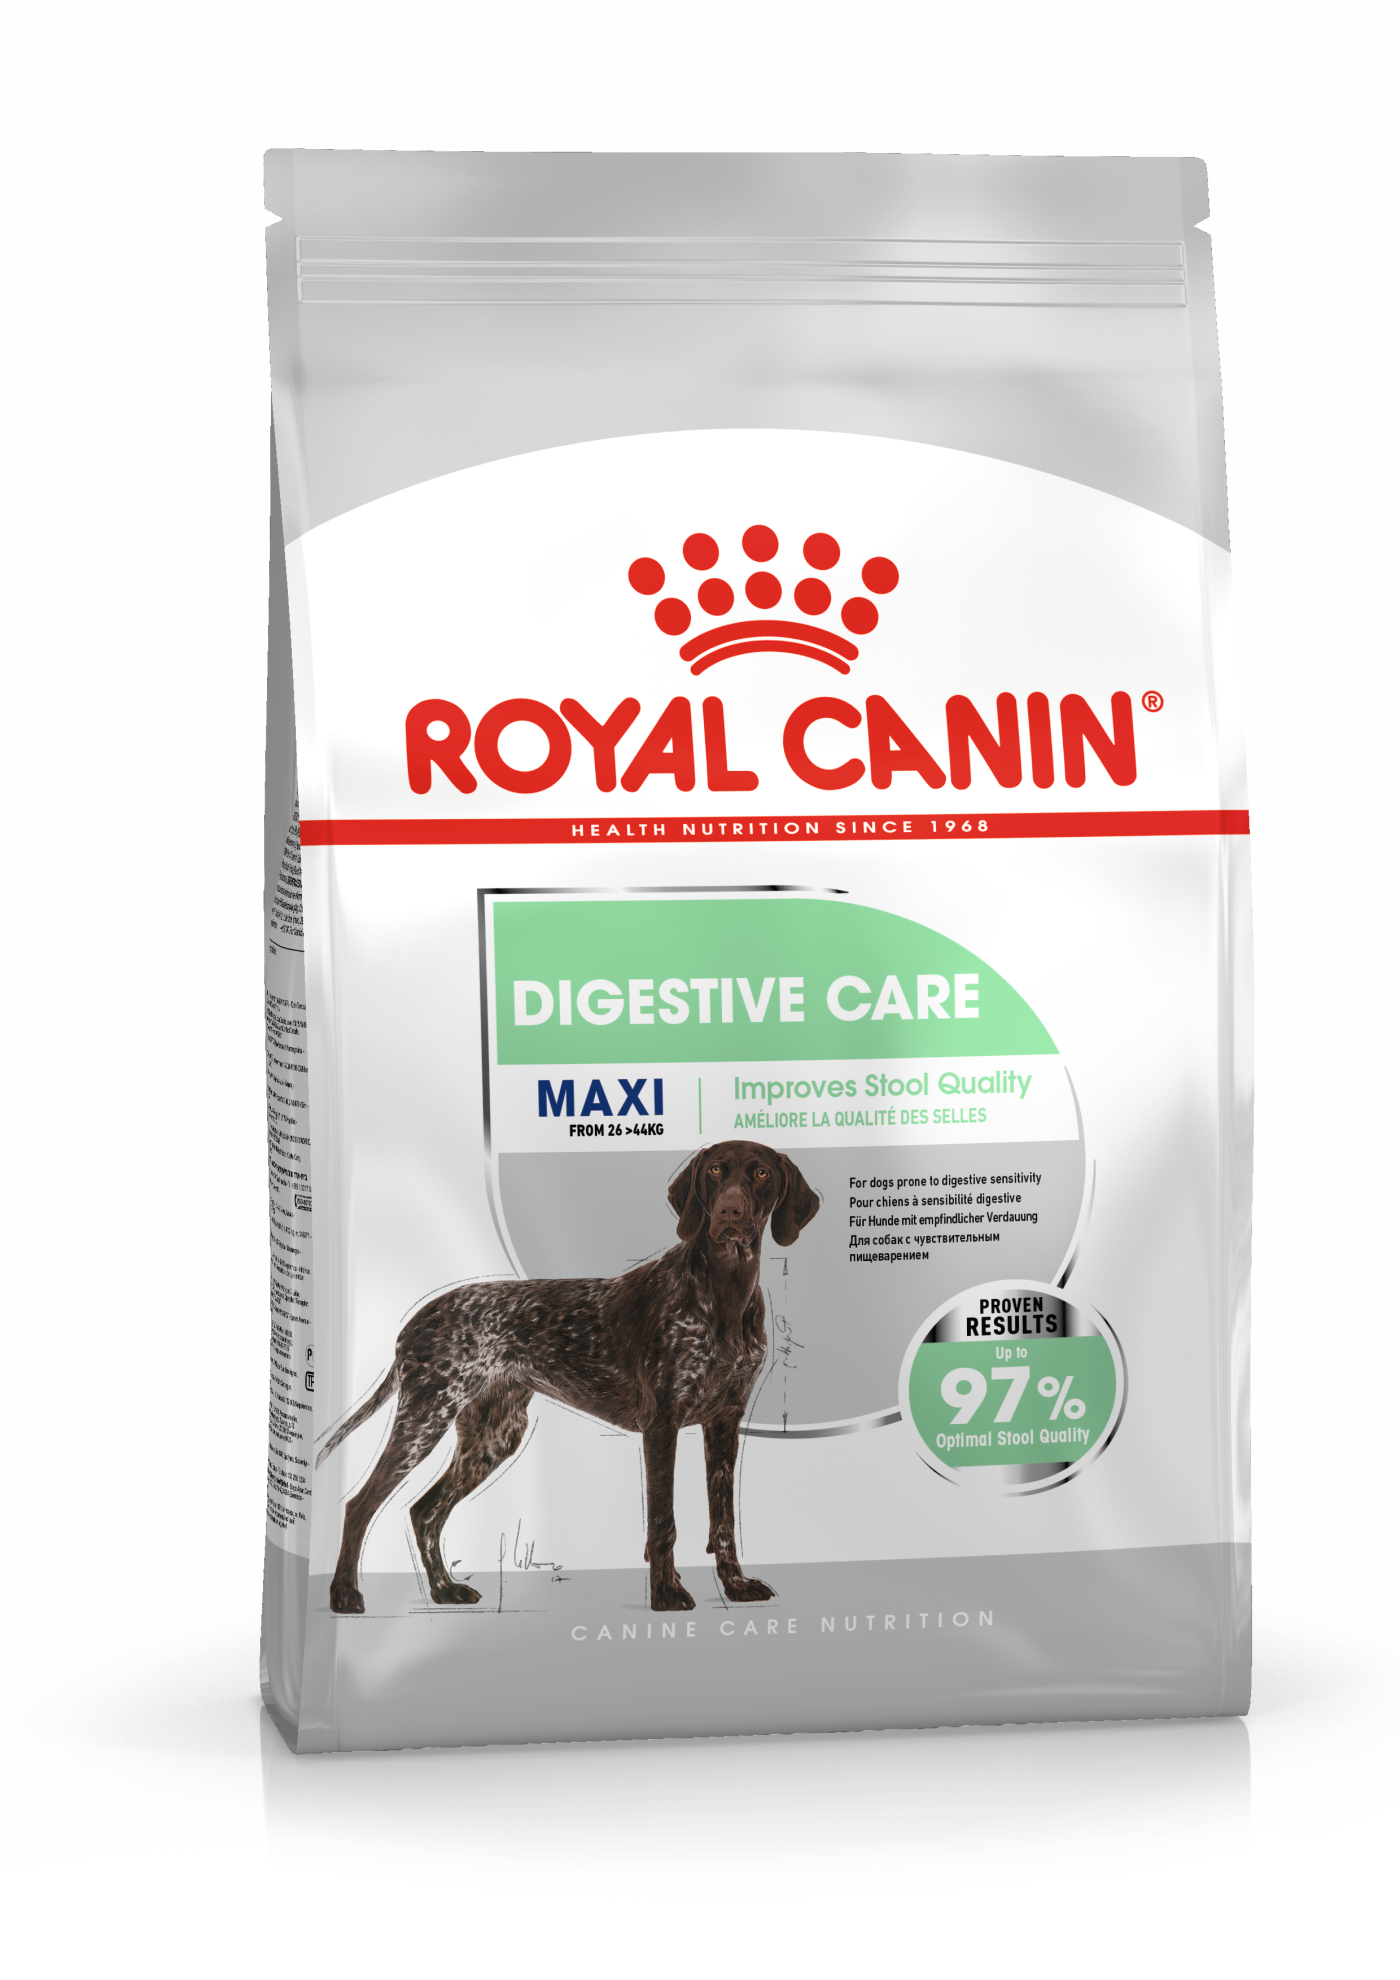 Купить корм Royal Canin Maxi Digestive care (Макси кэа) в официальном интернет-магазине